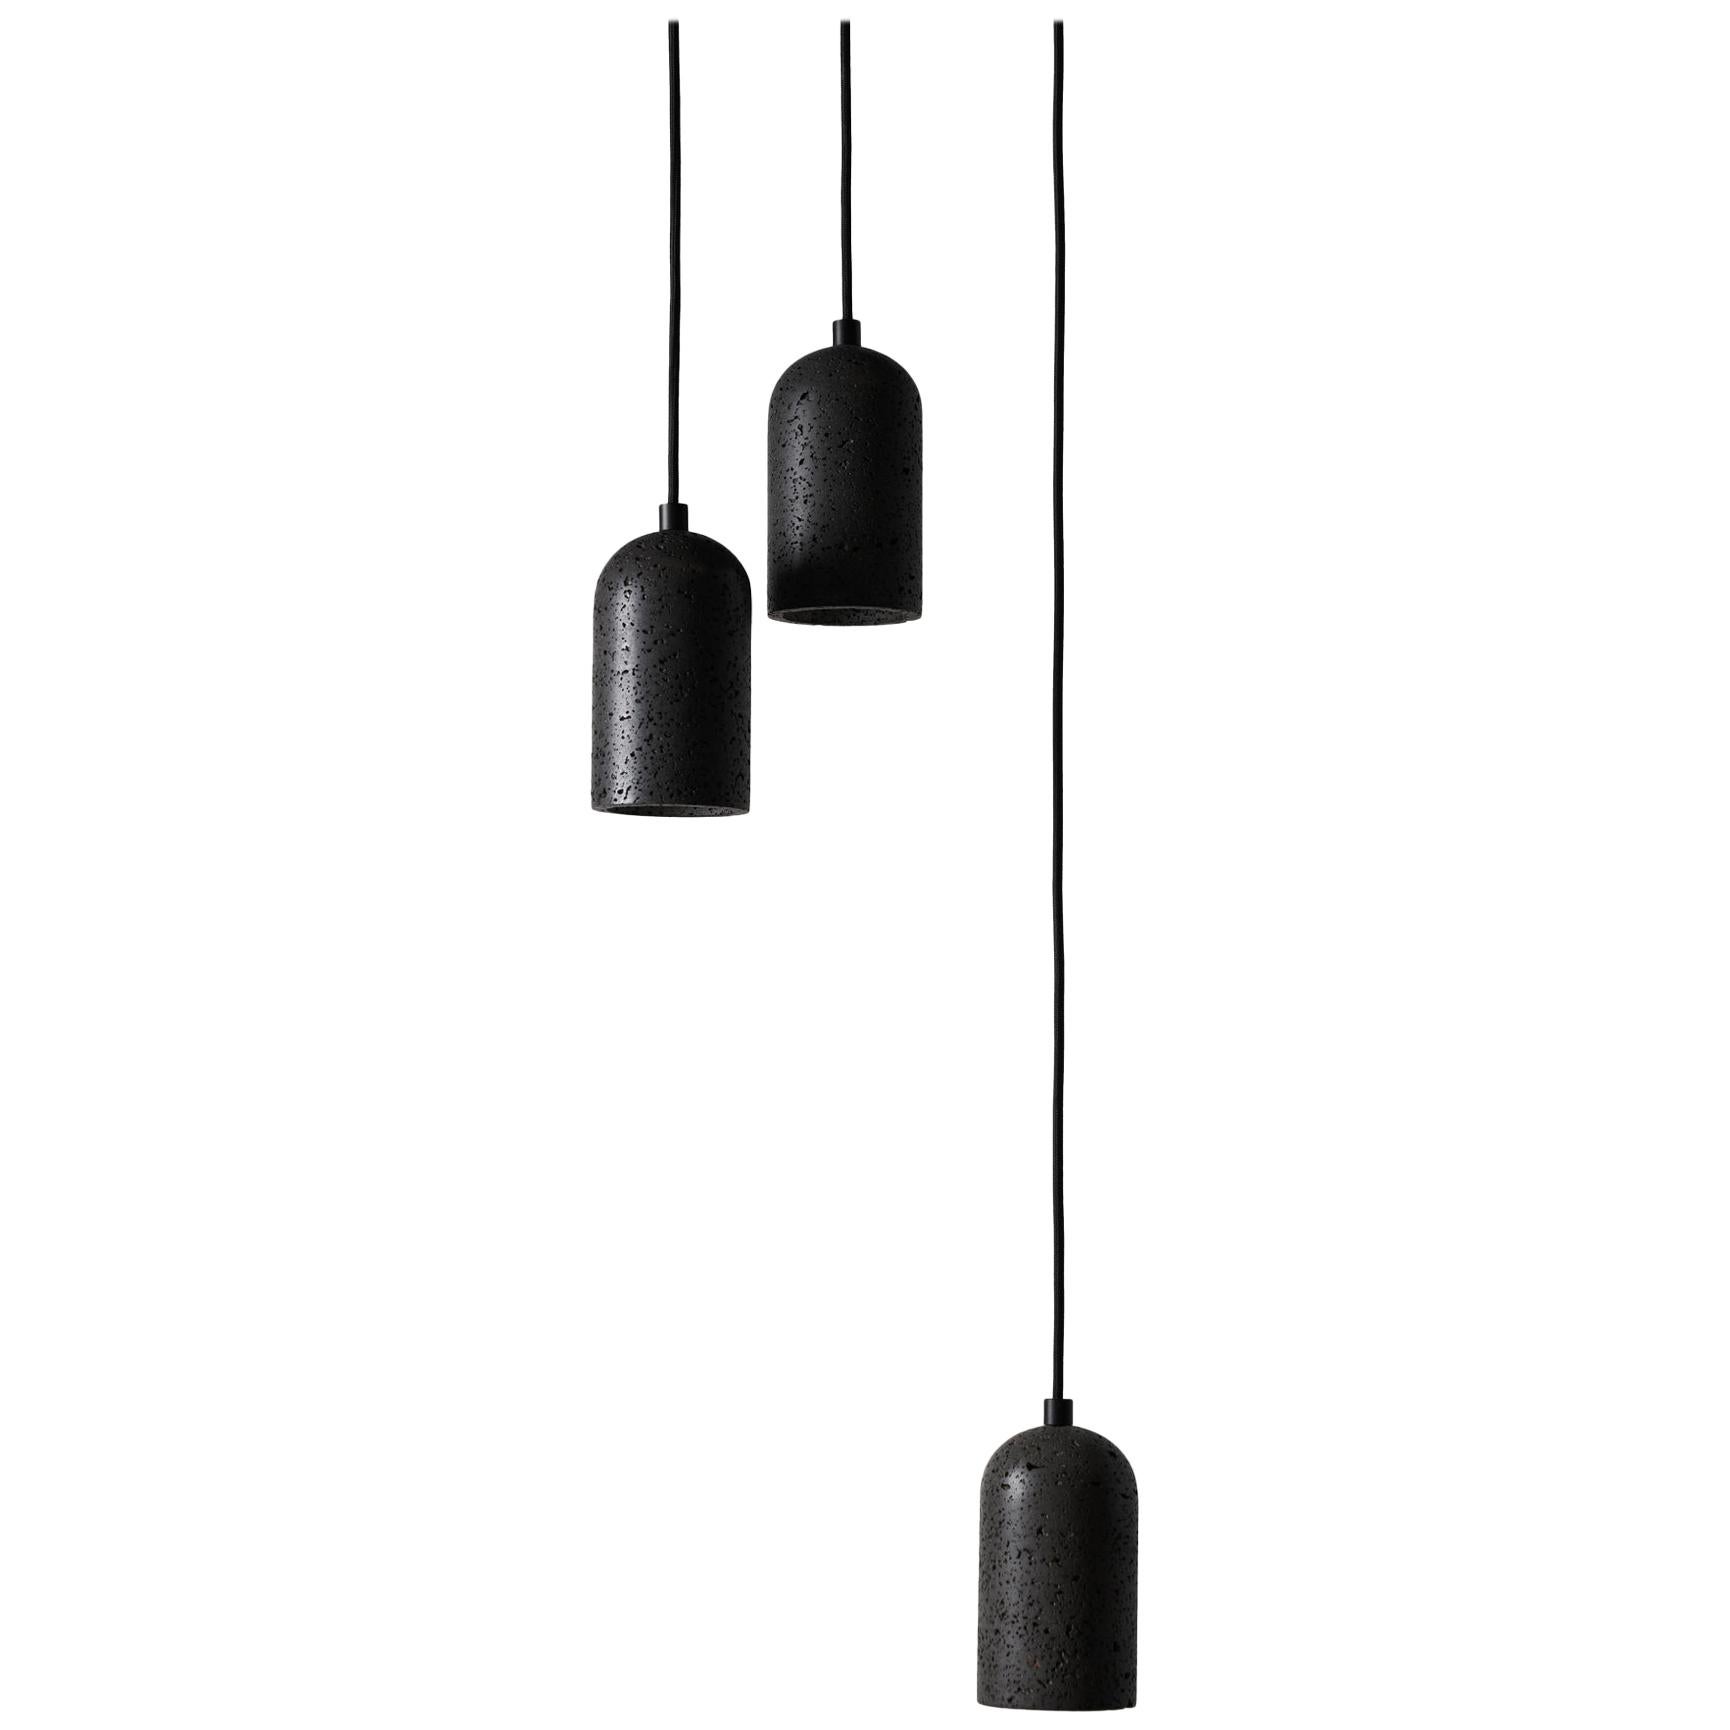 Contemporary pendant lamps 'U' in black lava stone